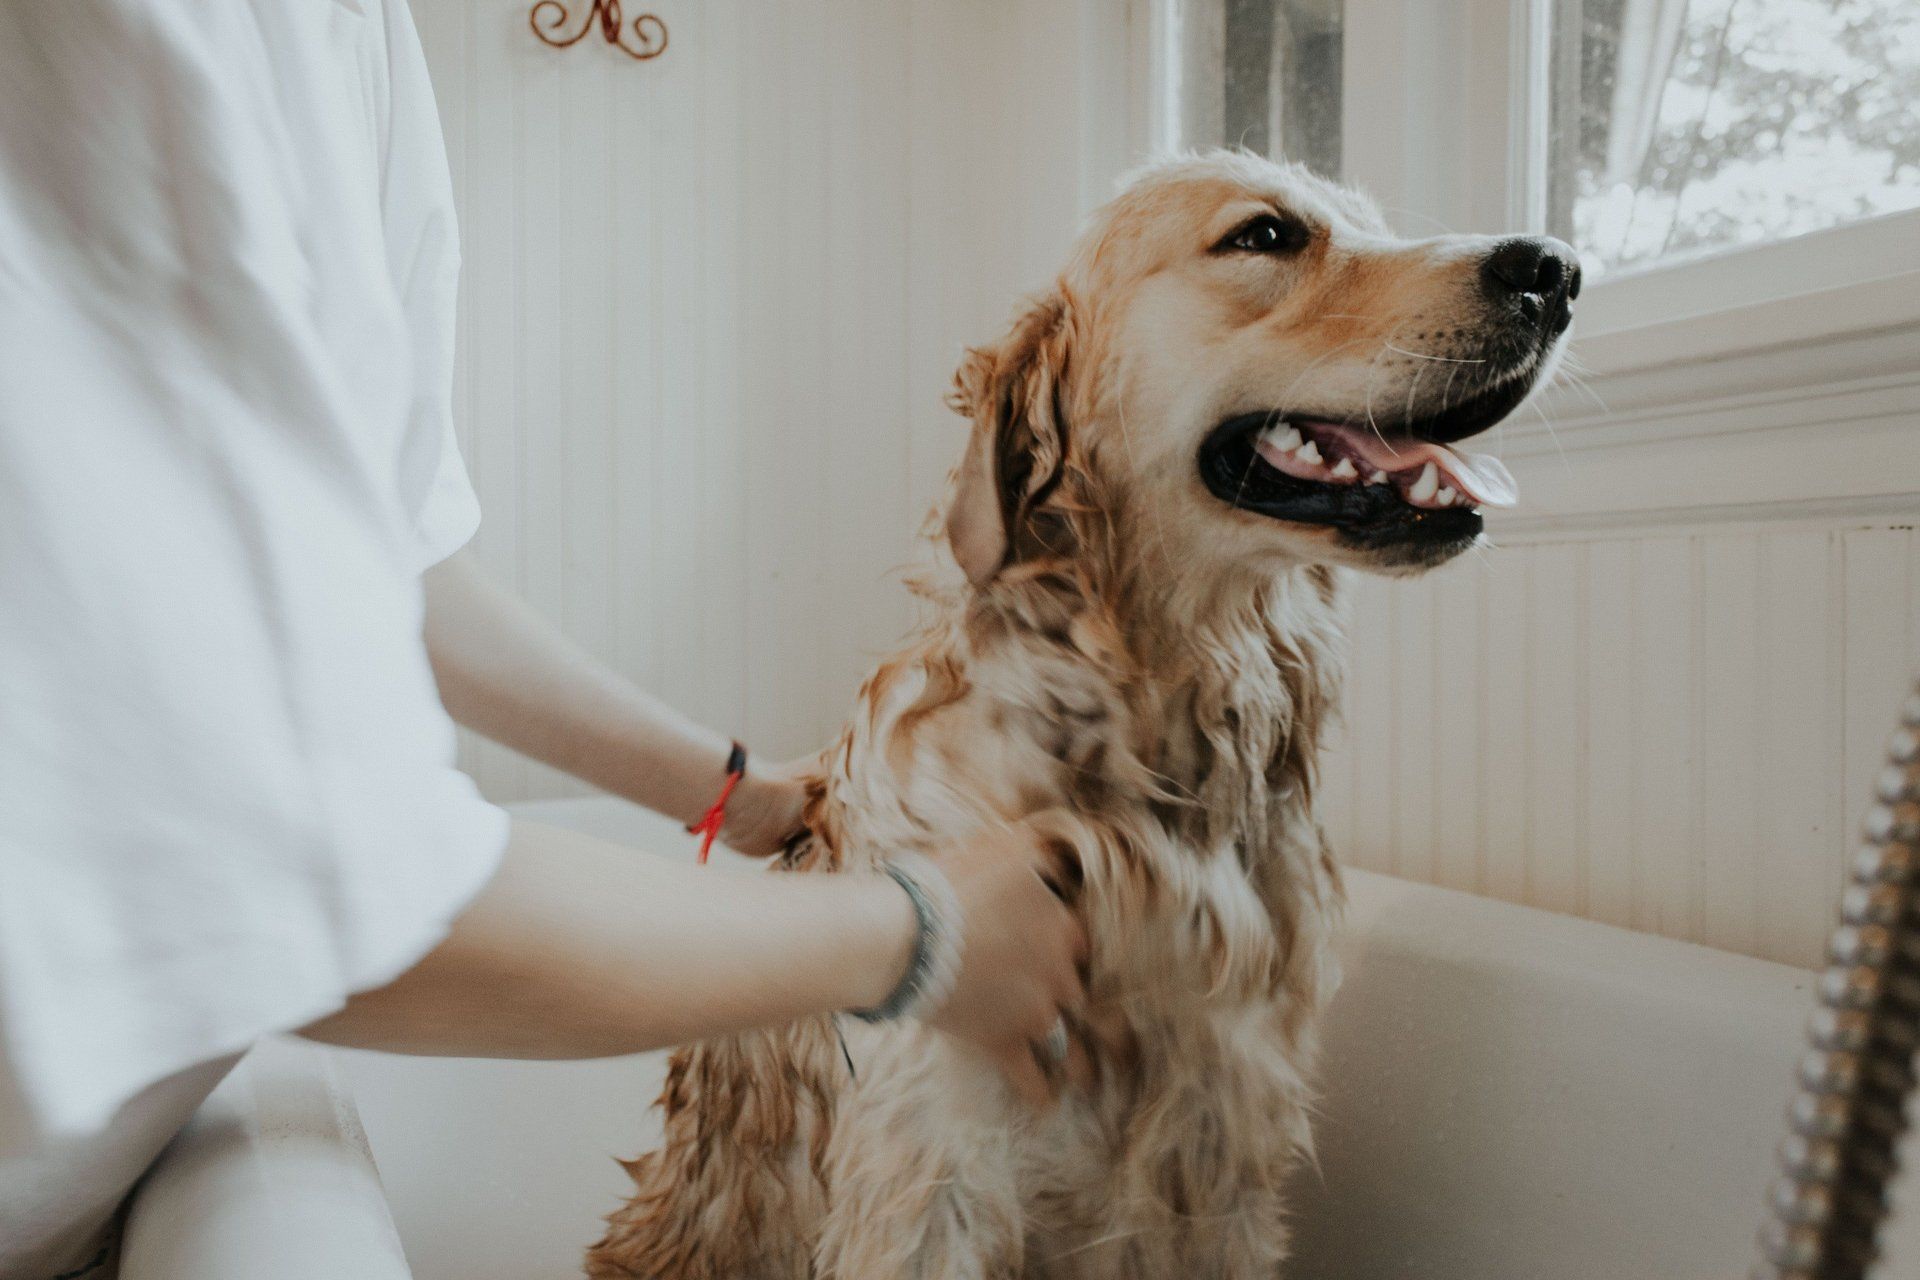 Dog in bath getting scrubbed